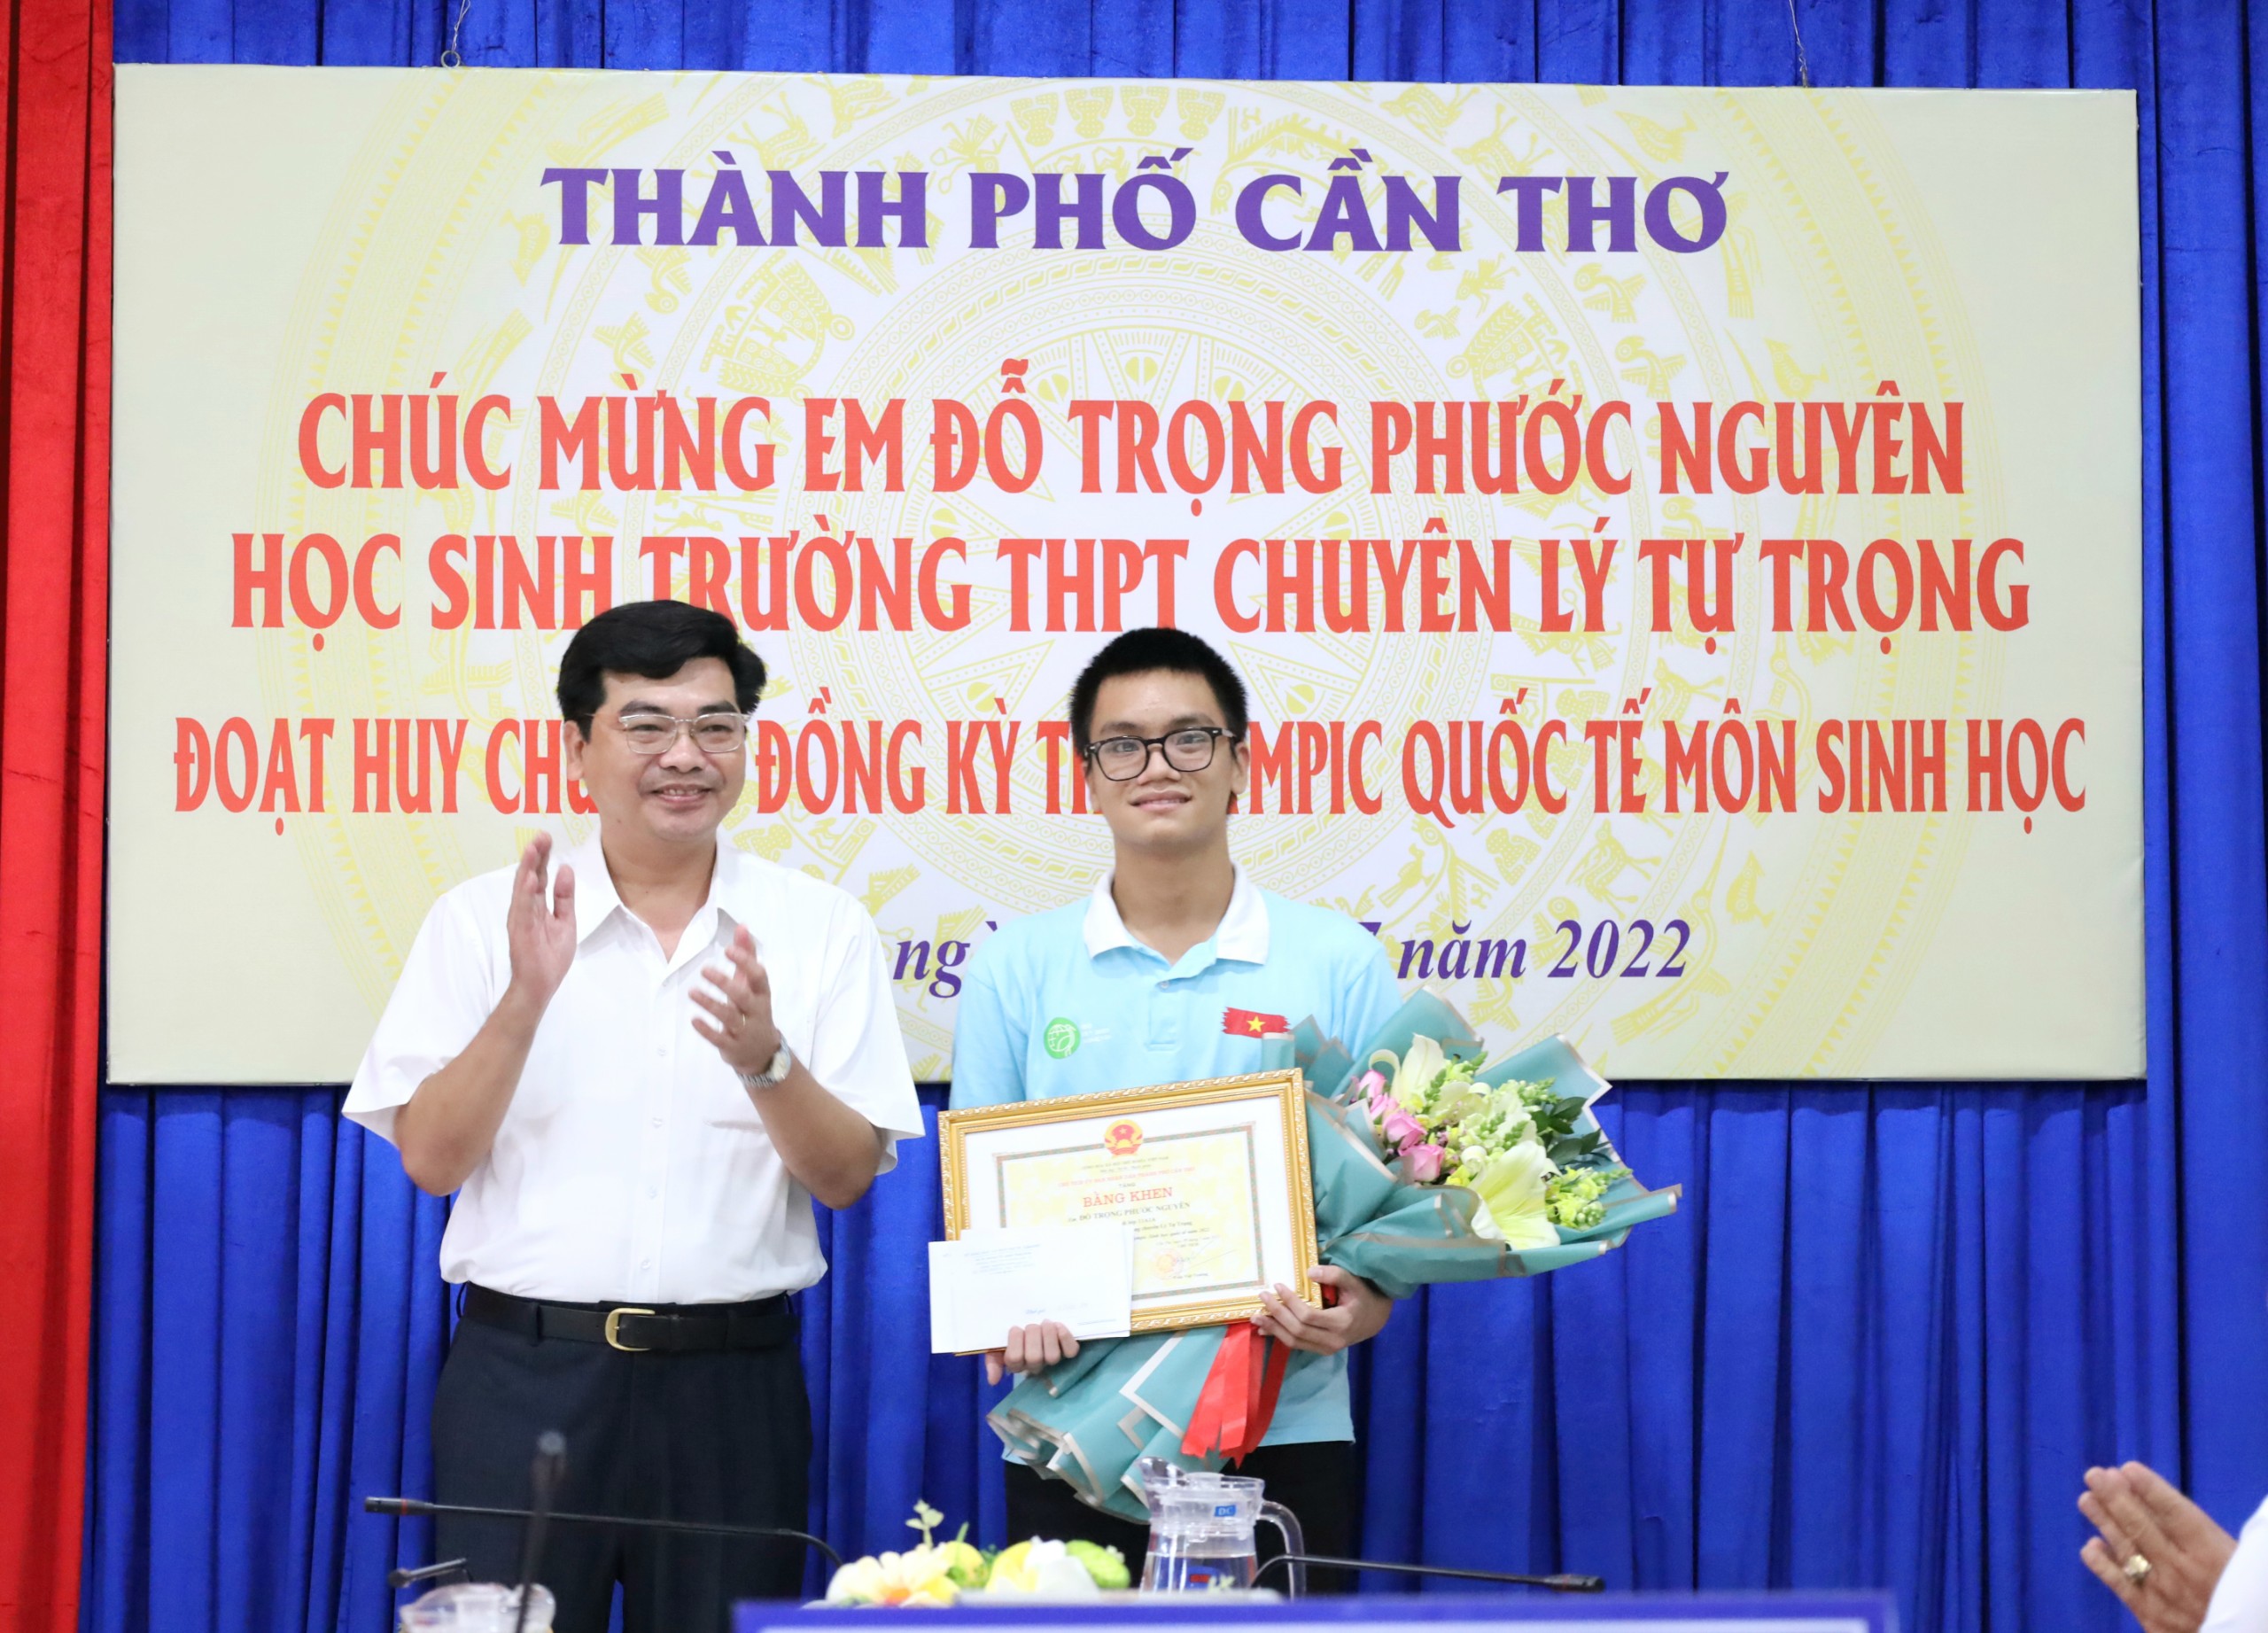 Ông Trần Thanh Bình - Giám đốc Sở Giáo dục và Đào tạo TP. Cần Thơ trao quà khen thưởng cho em Đỗ Trọng Phước Nguyên.